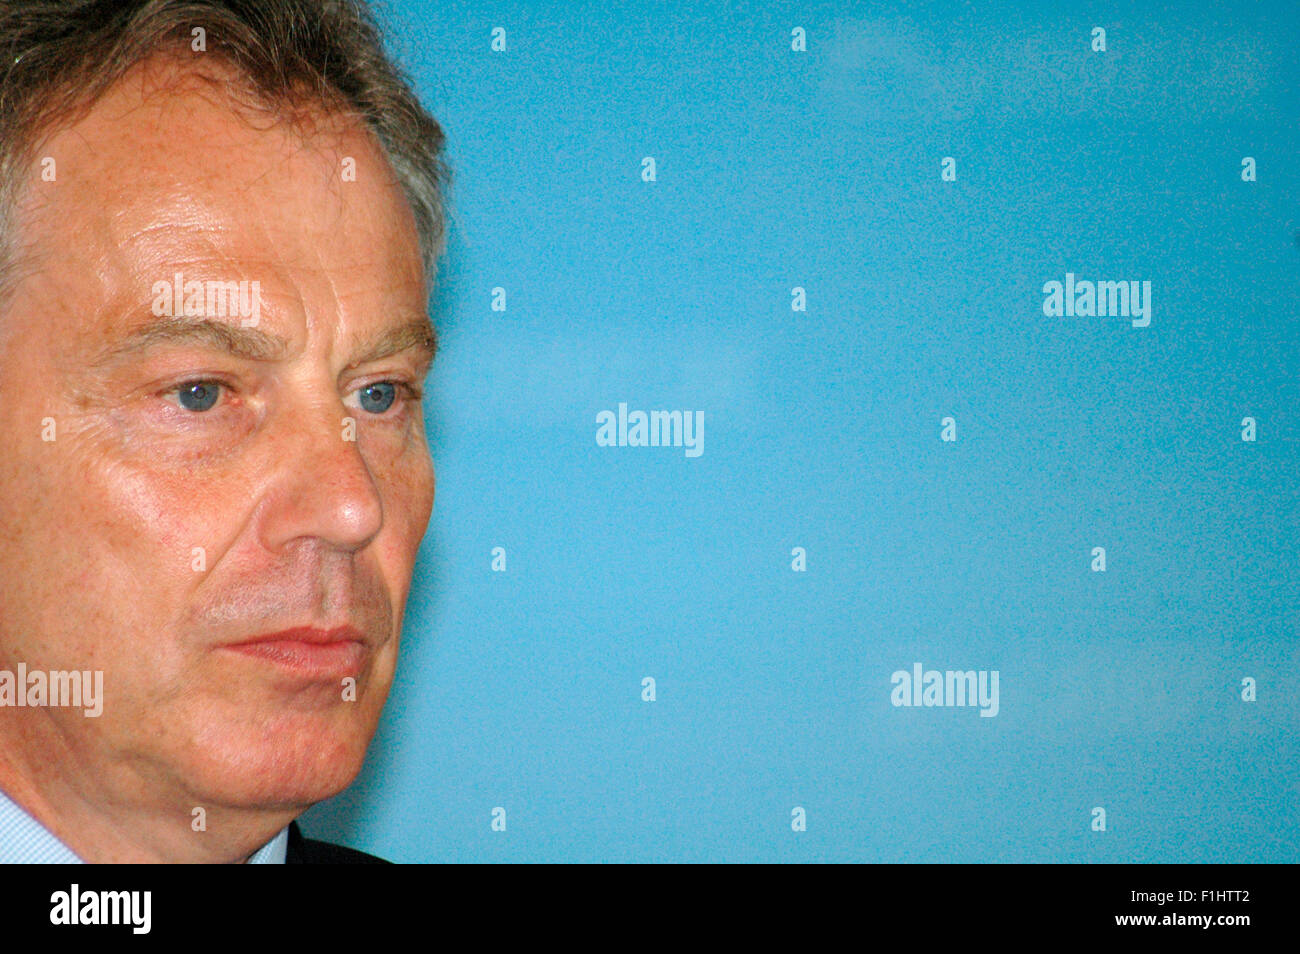 Tony Blair - Pressetermin Mit der dt. Bundeskanzlerin Anlaesslich der Uebergabe von Unterschriften der Aktion "Global Call to Ac Stockfoto